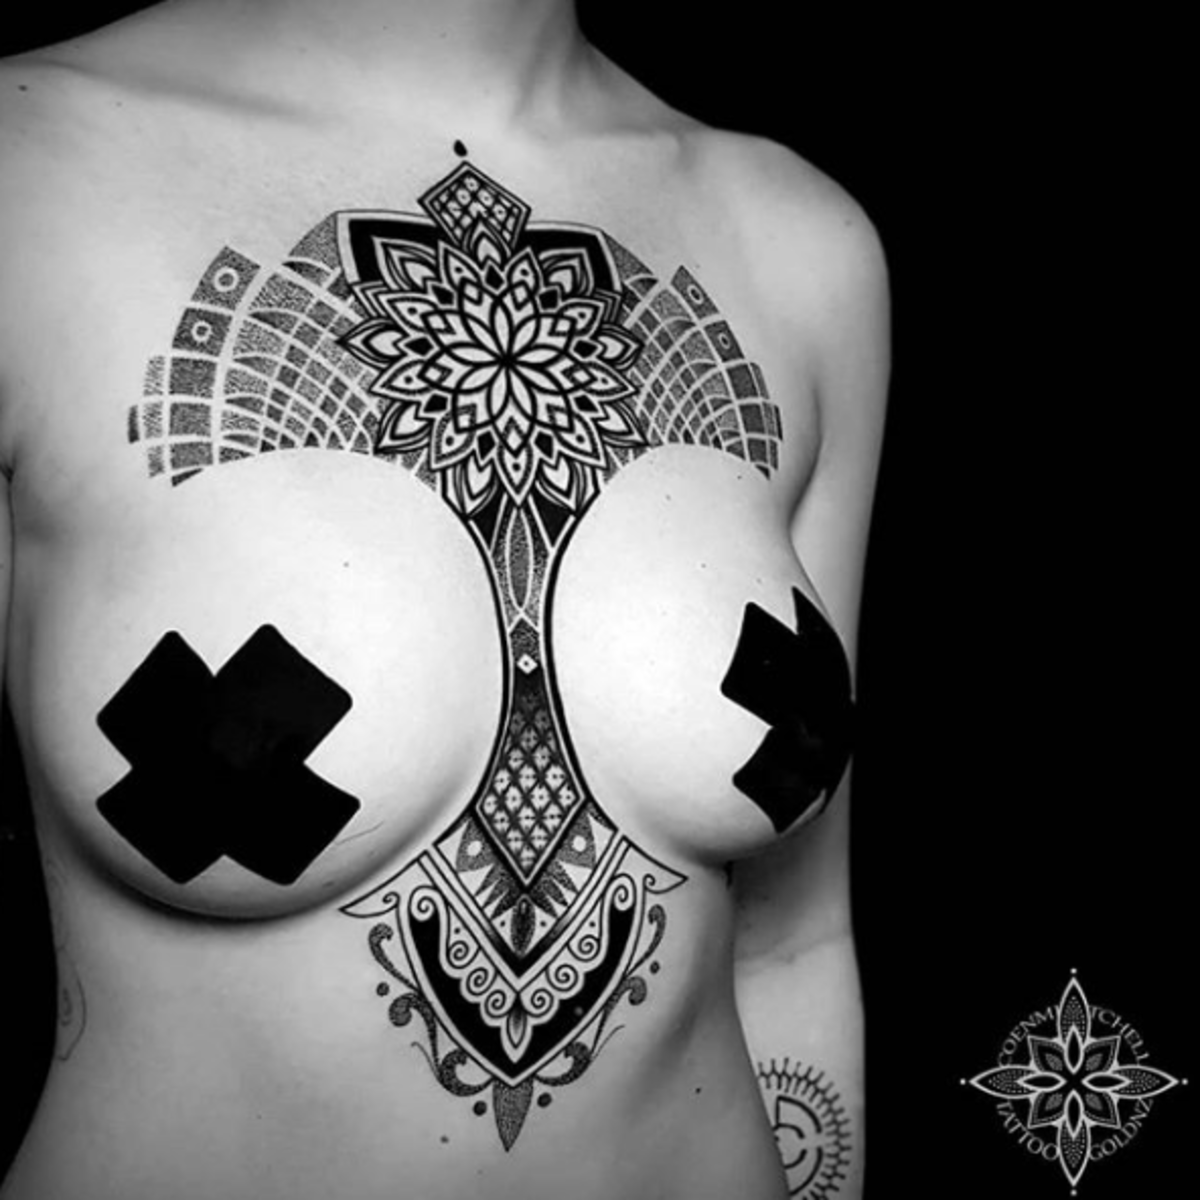 tatuointi, tatuoija, tatuointiidea, tatuointiinspiraatio, tatuointisuunnittelu, muste, inkedmag, tatuointi naisille, naisten tatuointi